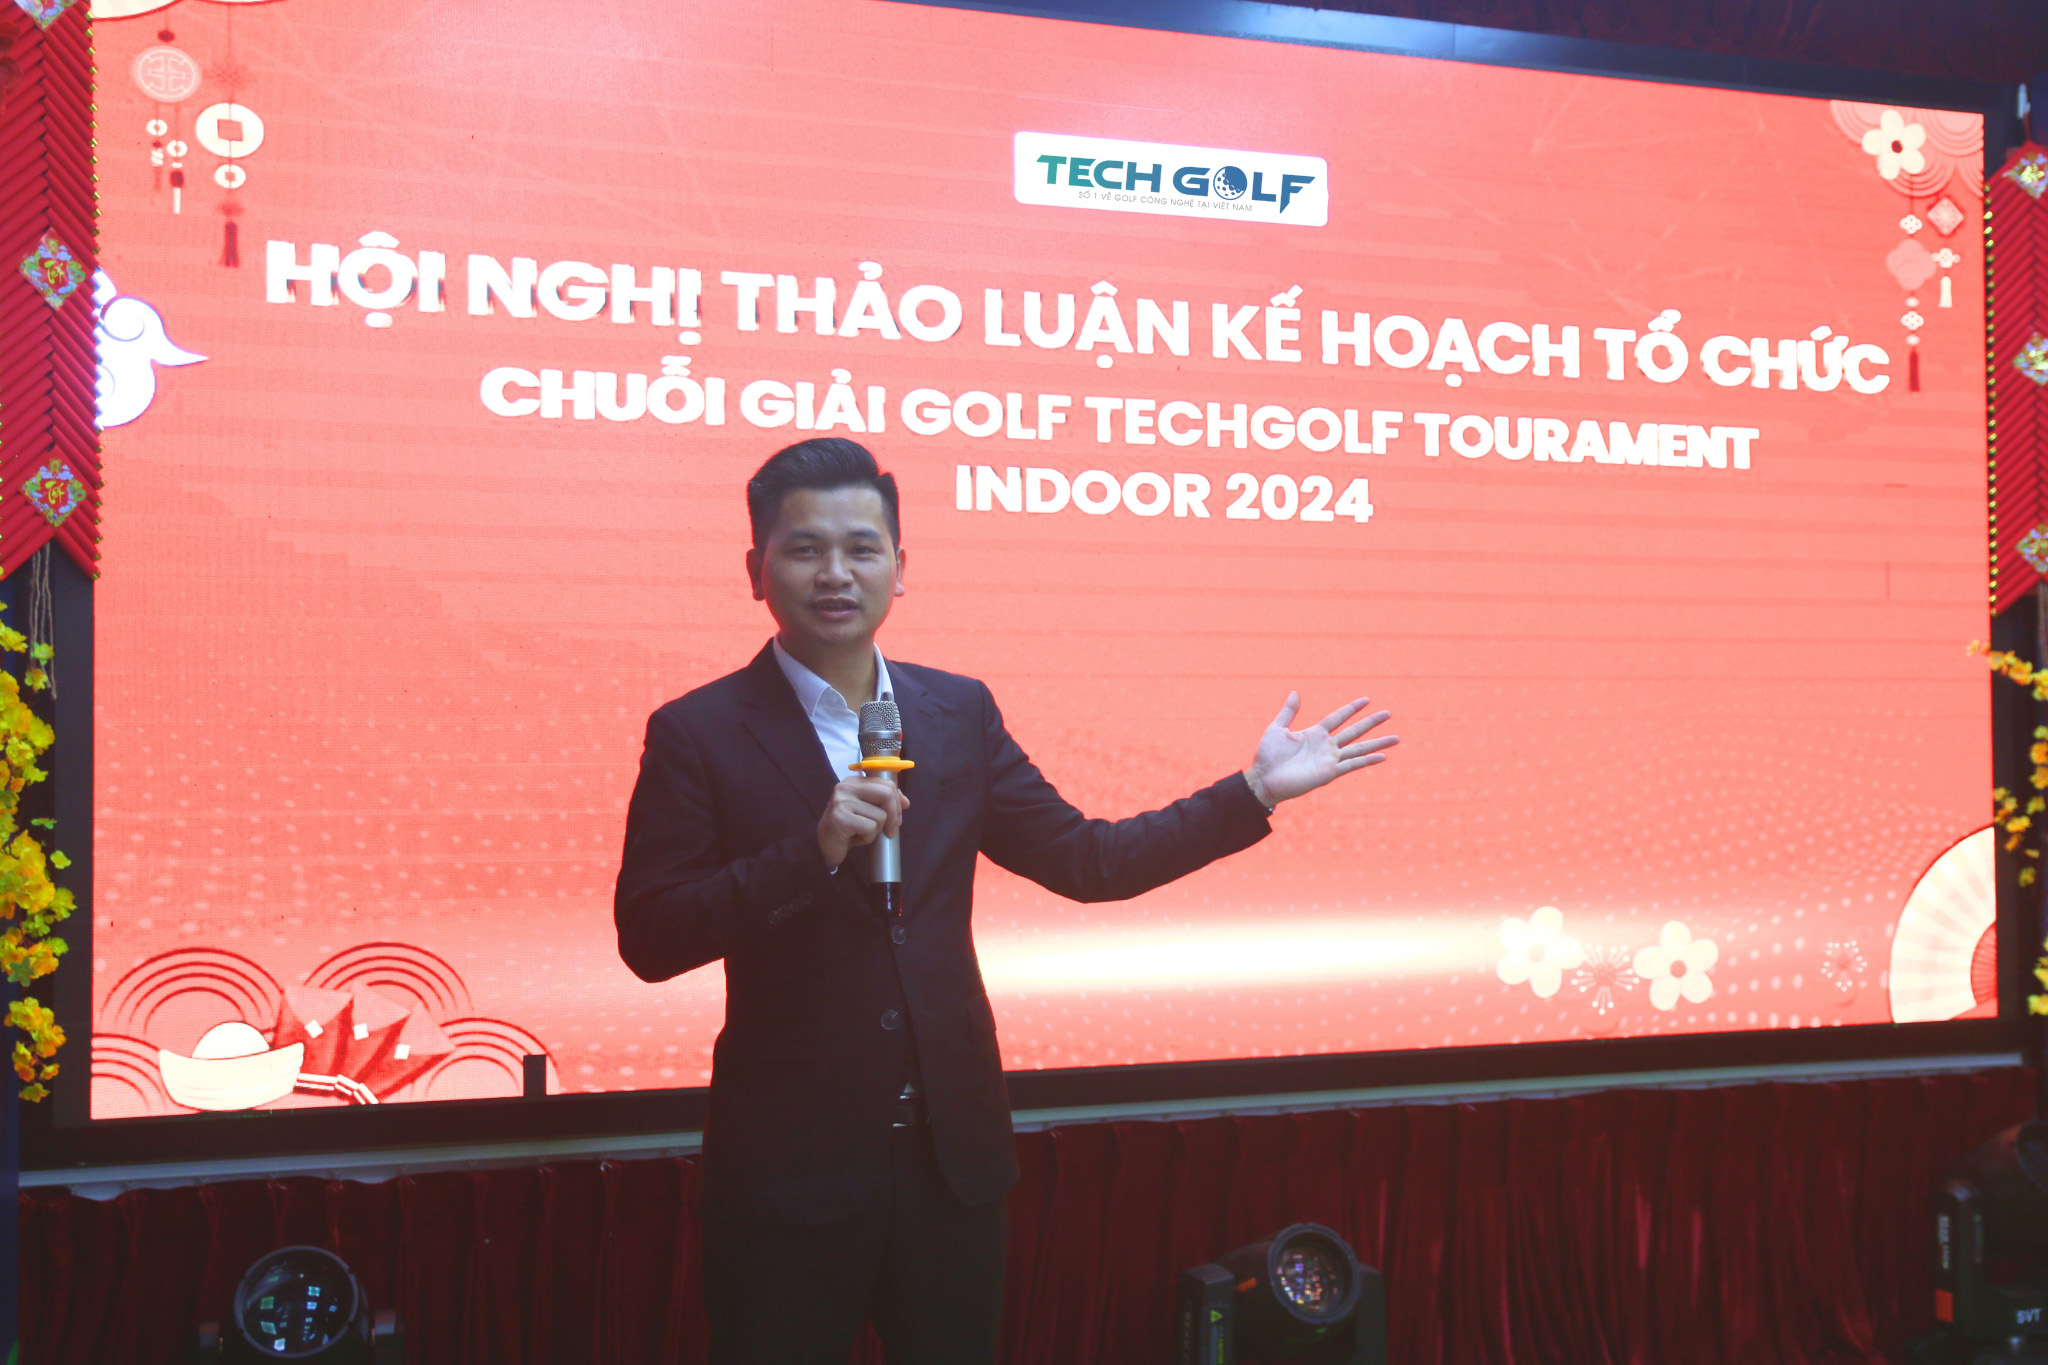 Trưởng phòng dự án Techgolf, Mr. Nguyễn Tiến Dũng nhận định về 3 phần mềm golf 3D top đầu hiện nay